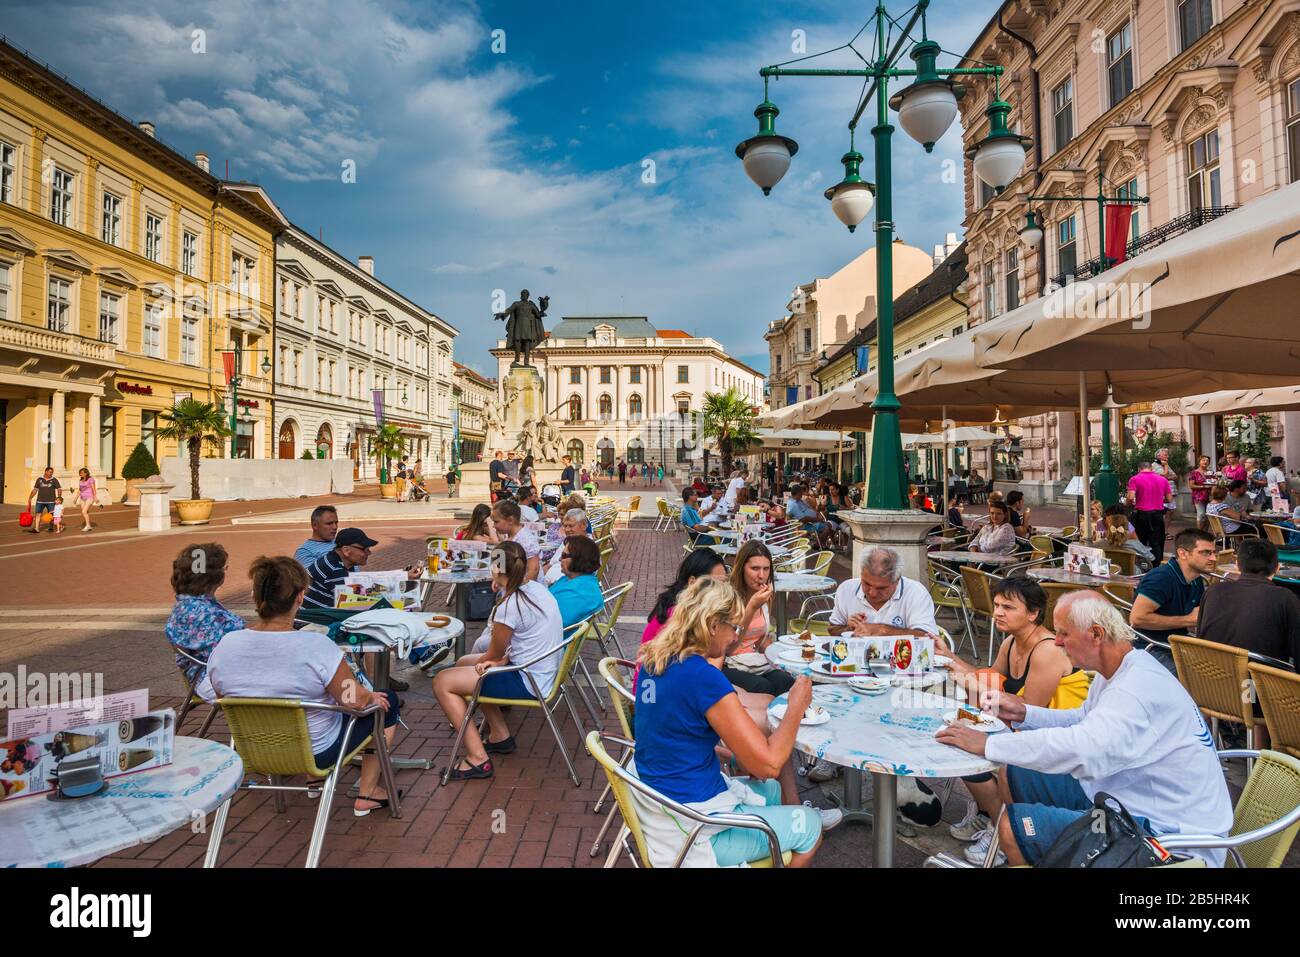 Bürgersteigcafé in Klauzal ter, Platz in Szeged, südliches Großes ungarisches Tiefland, Kreis Csongrad, Ungarn Stockfoto